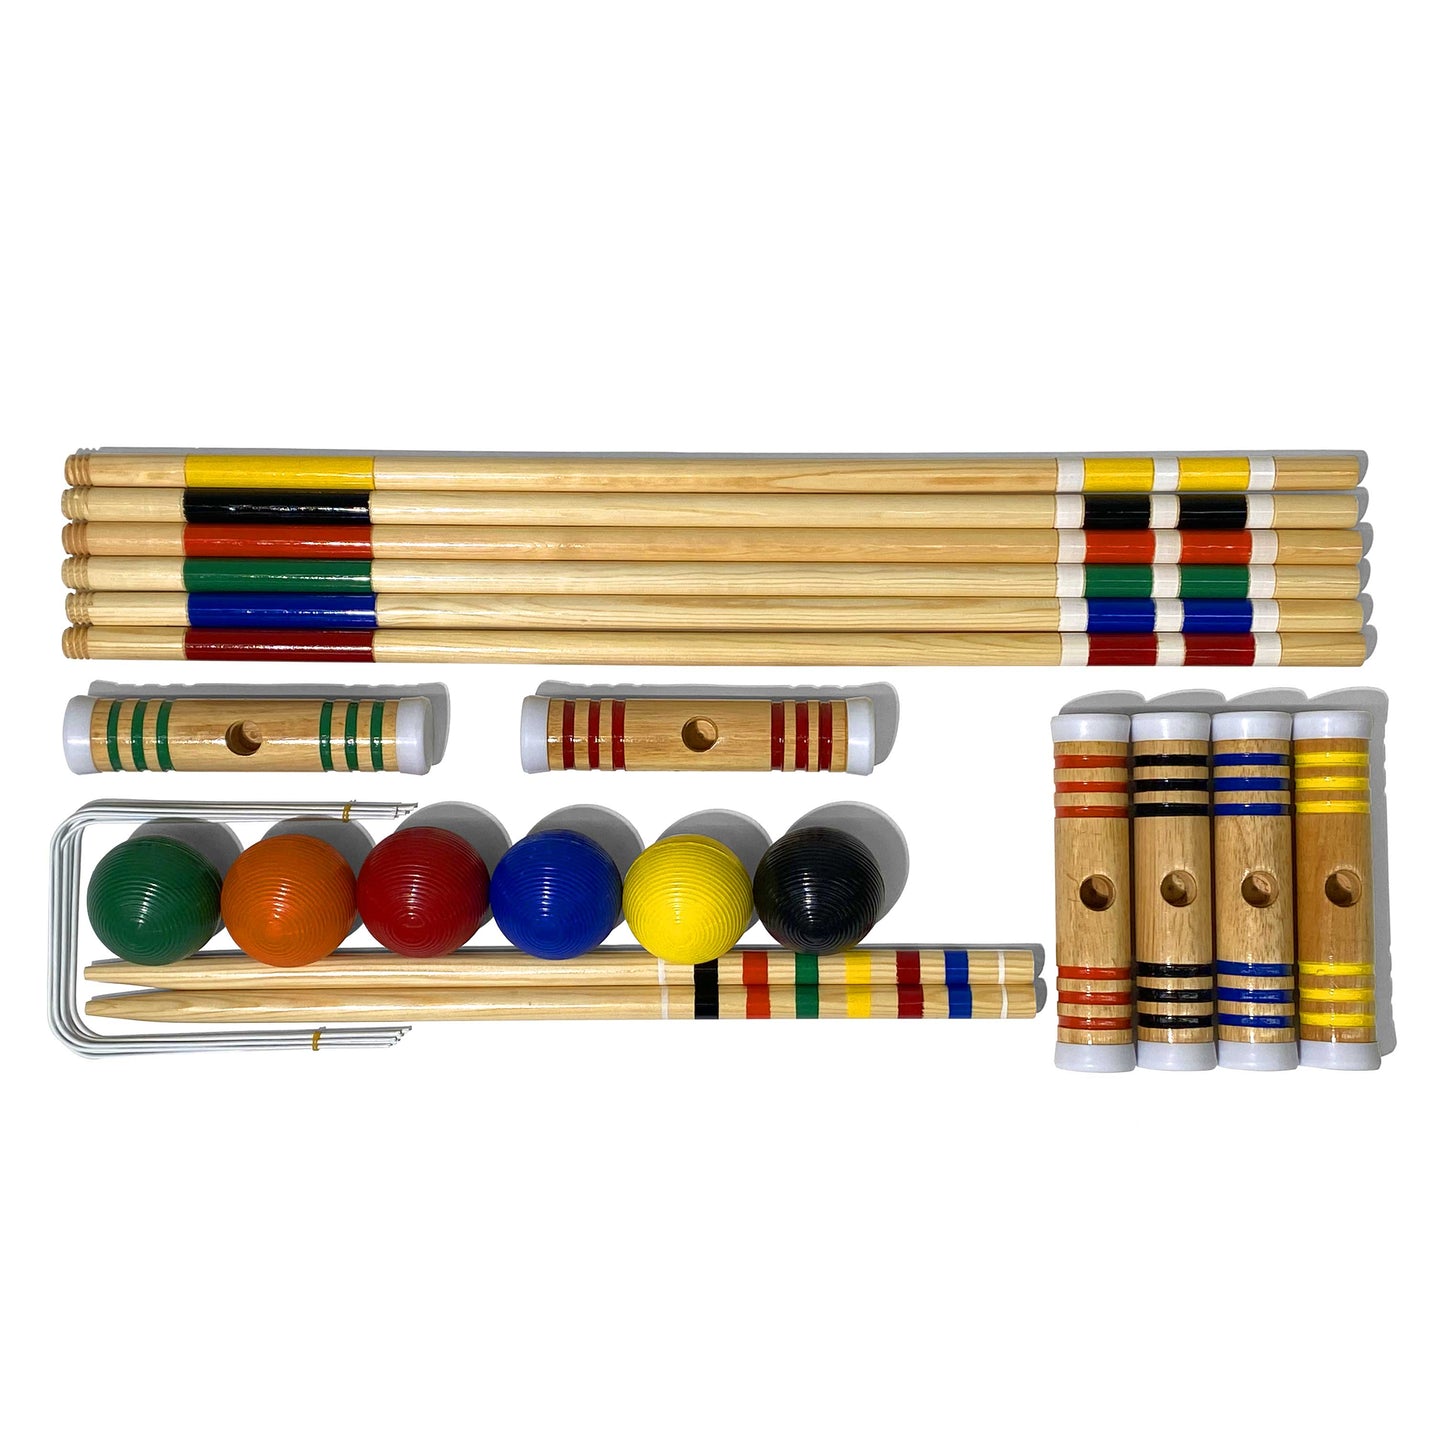 Croquet 6 Player Set